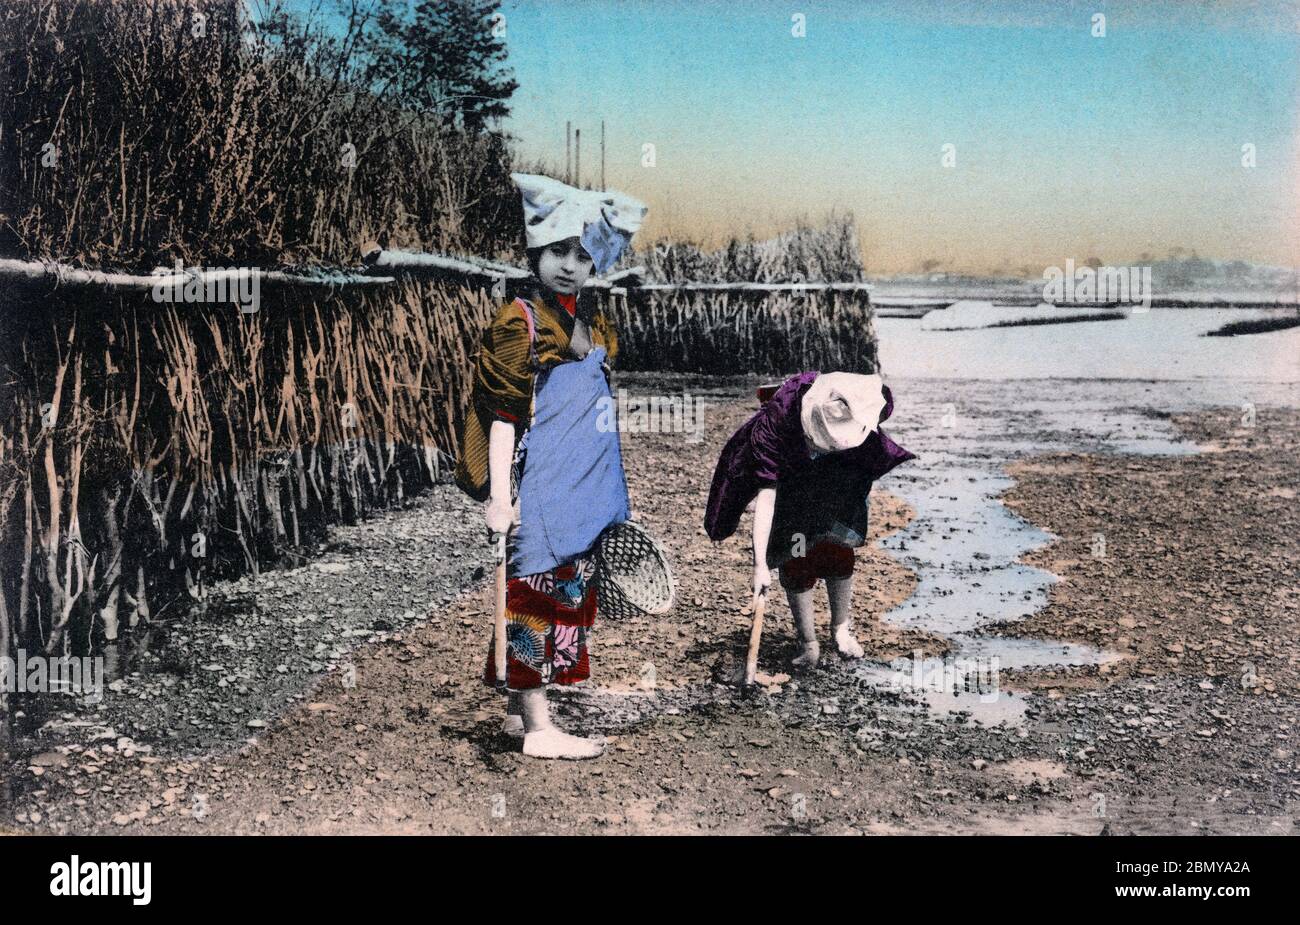 [ 1910s Japon - les femmes japonaises rassemblent des coquillages ] — deux femmes rassemblent des coquillages au bord de la mer à marée basse. Ce fut un passé commun et populaire au Japon jusqu'à ce que l'eau devienne trop polluée. Récemment, cette douane fait un retour aux endroits où les plages ont été suffisamment régénérées. Cette carte postale a été publiée entre mars 1907 (Meiji 40) et mars 1918 (Taisho 7). carte postale vintage du xxe siècle. Banque D'Images